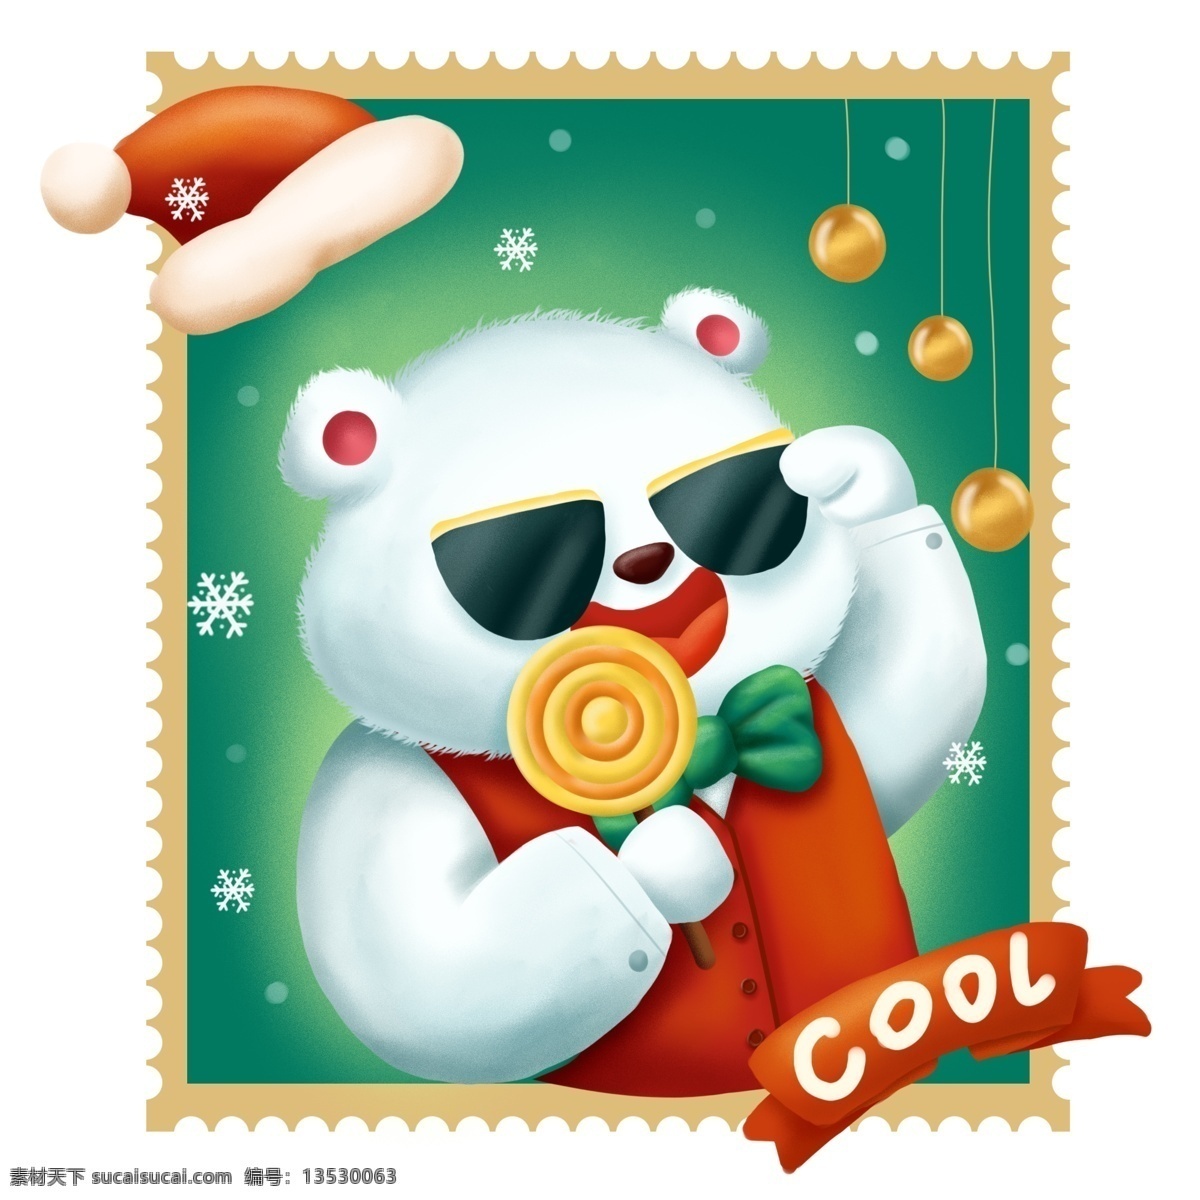 手绘 庆祝 圣诞 邮票 卡通 可爱 北极熊 商用 元素 圣诞节 欢乐 动物 插画 平安夜 圣诞球 糖果 波板糖 圣诞帽 墨镜 配图